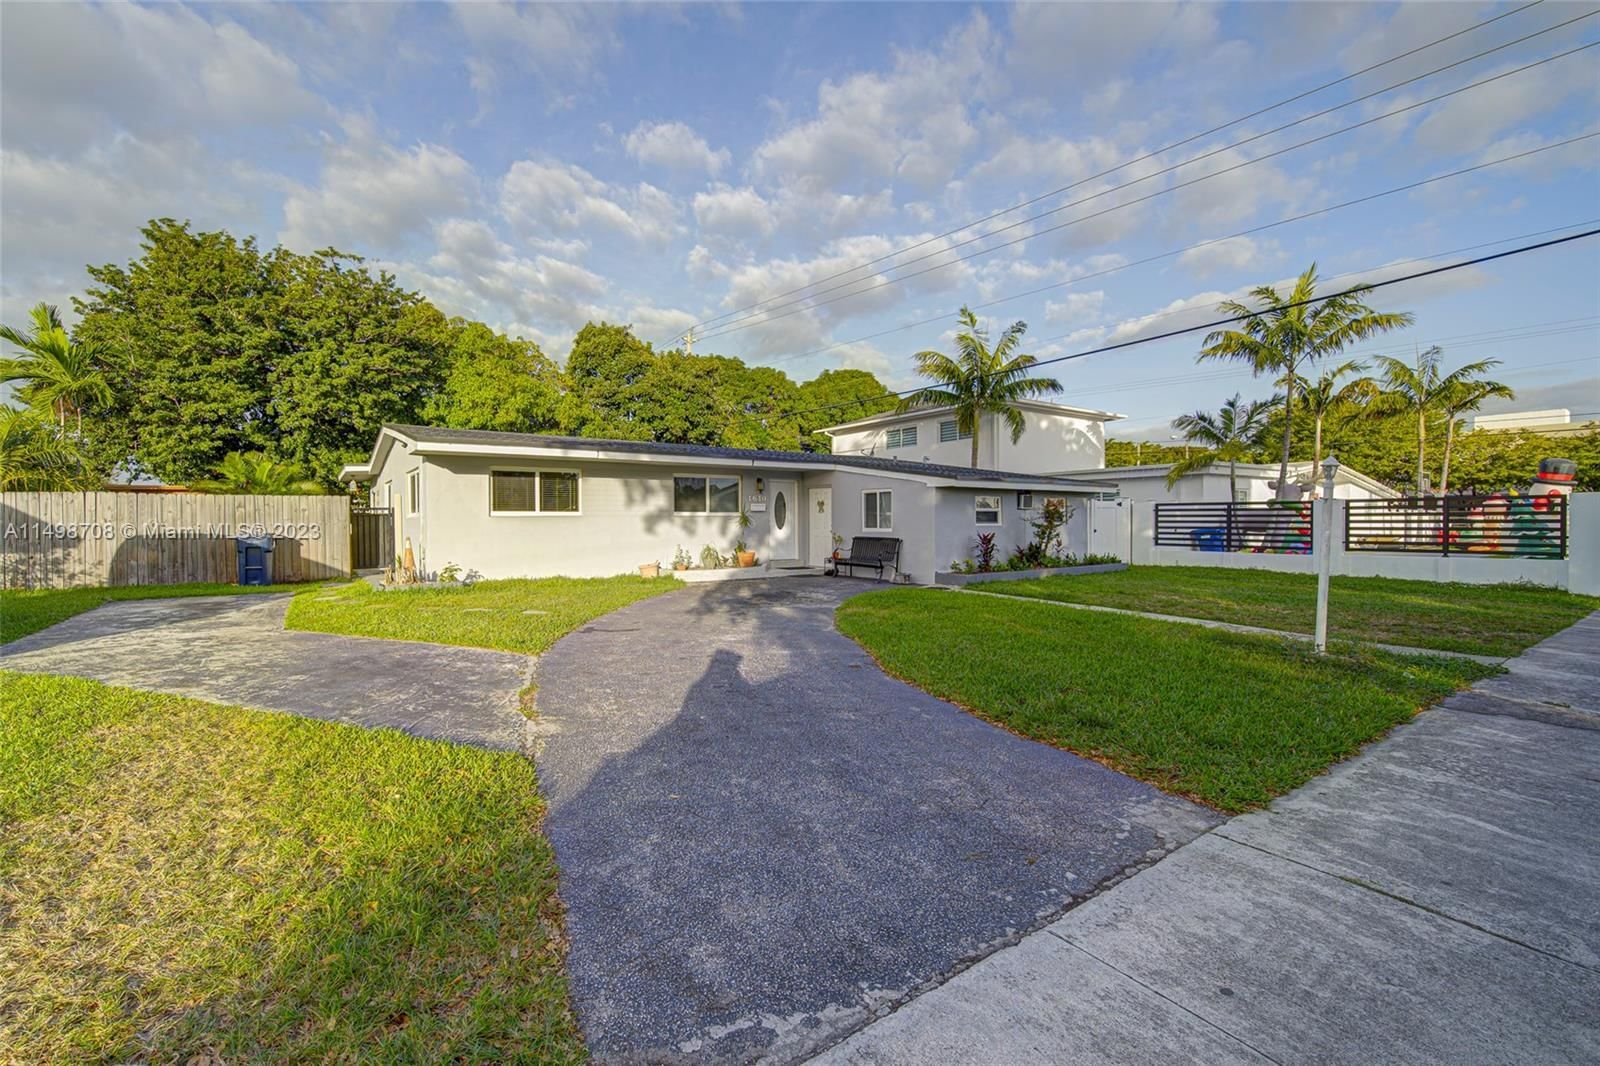 Real estate property located at 1610 87th Ct, Miami-Dade County, CORAL PARK ESTATES SEC 1, Miami, FL